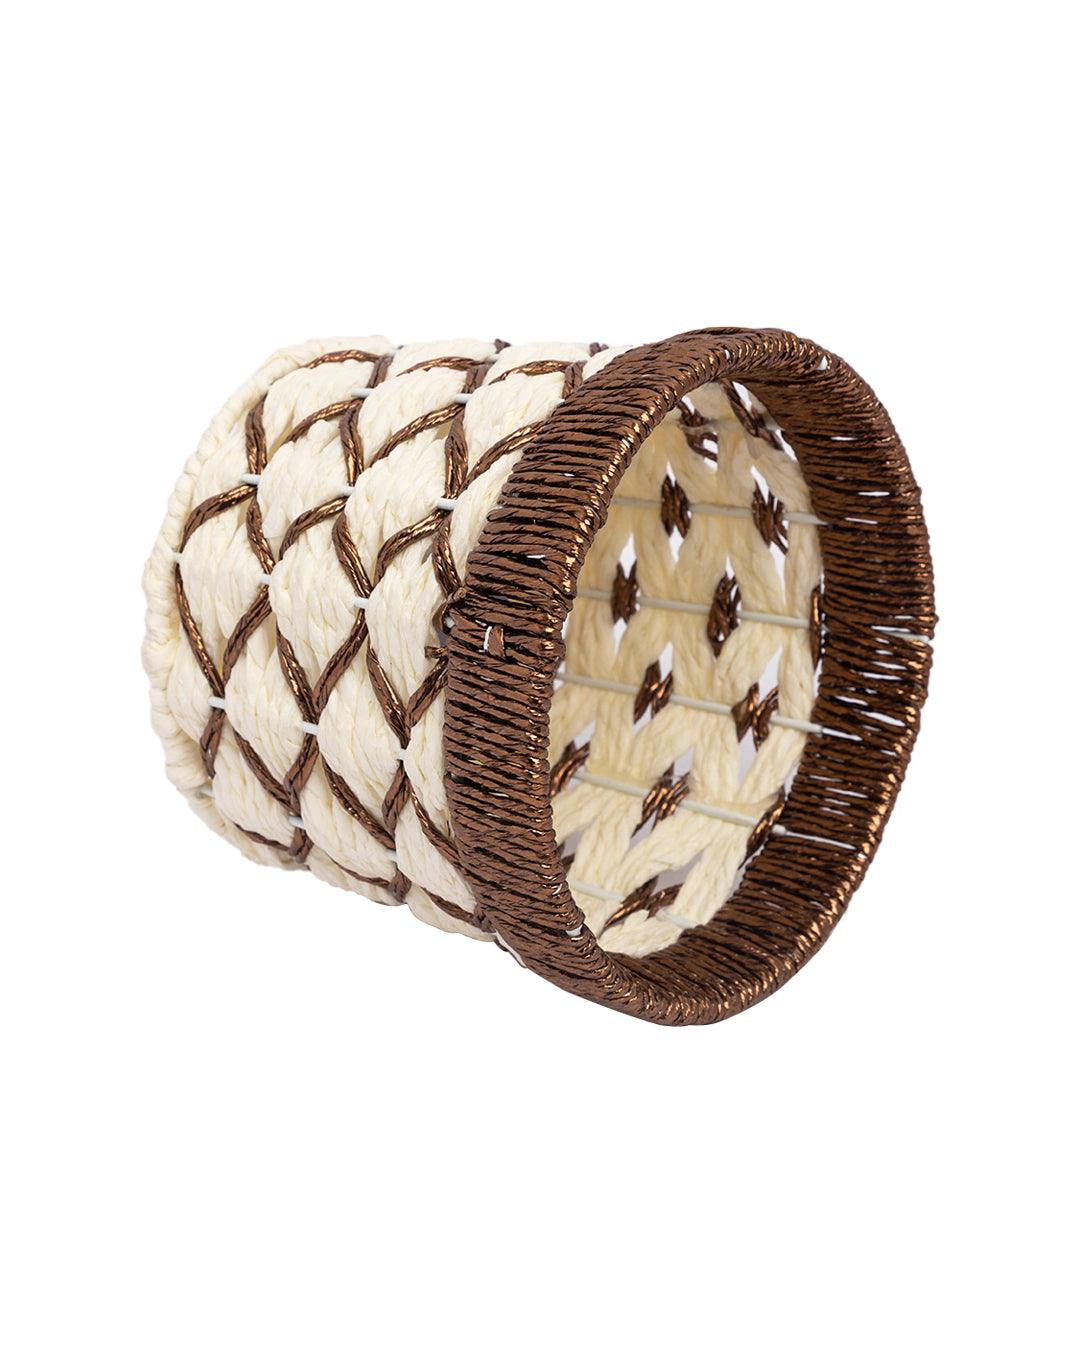 Decorative Basket, Dark Brown, Paper - MARKET 99